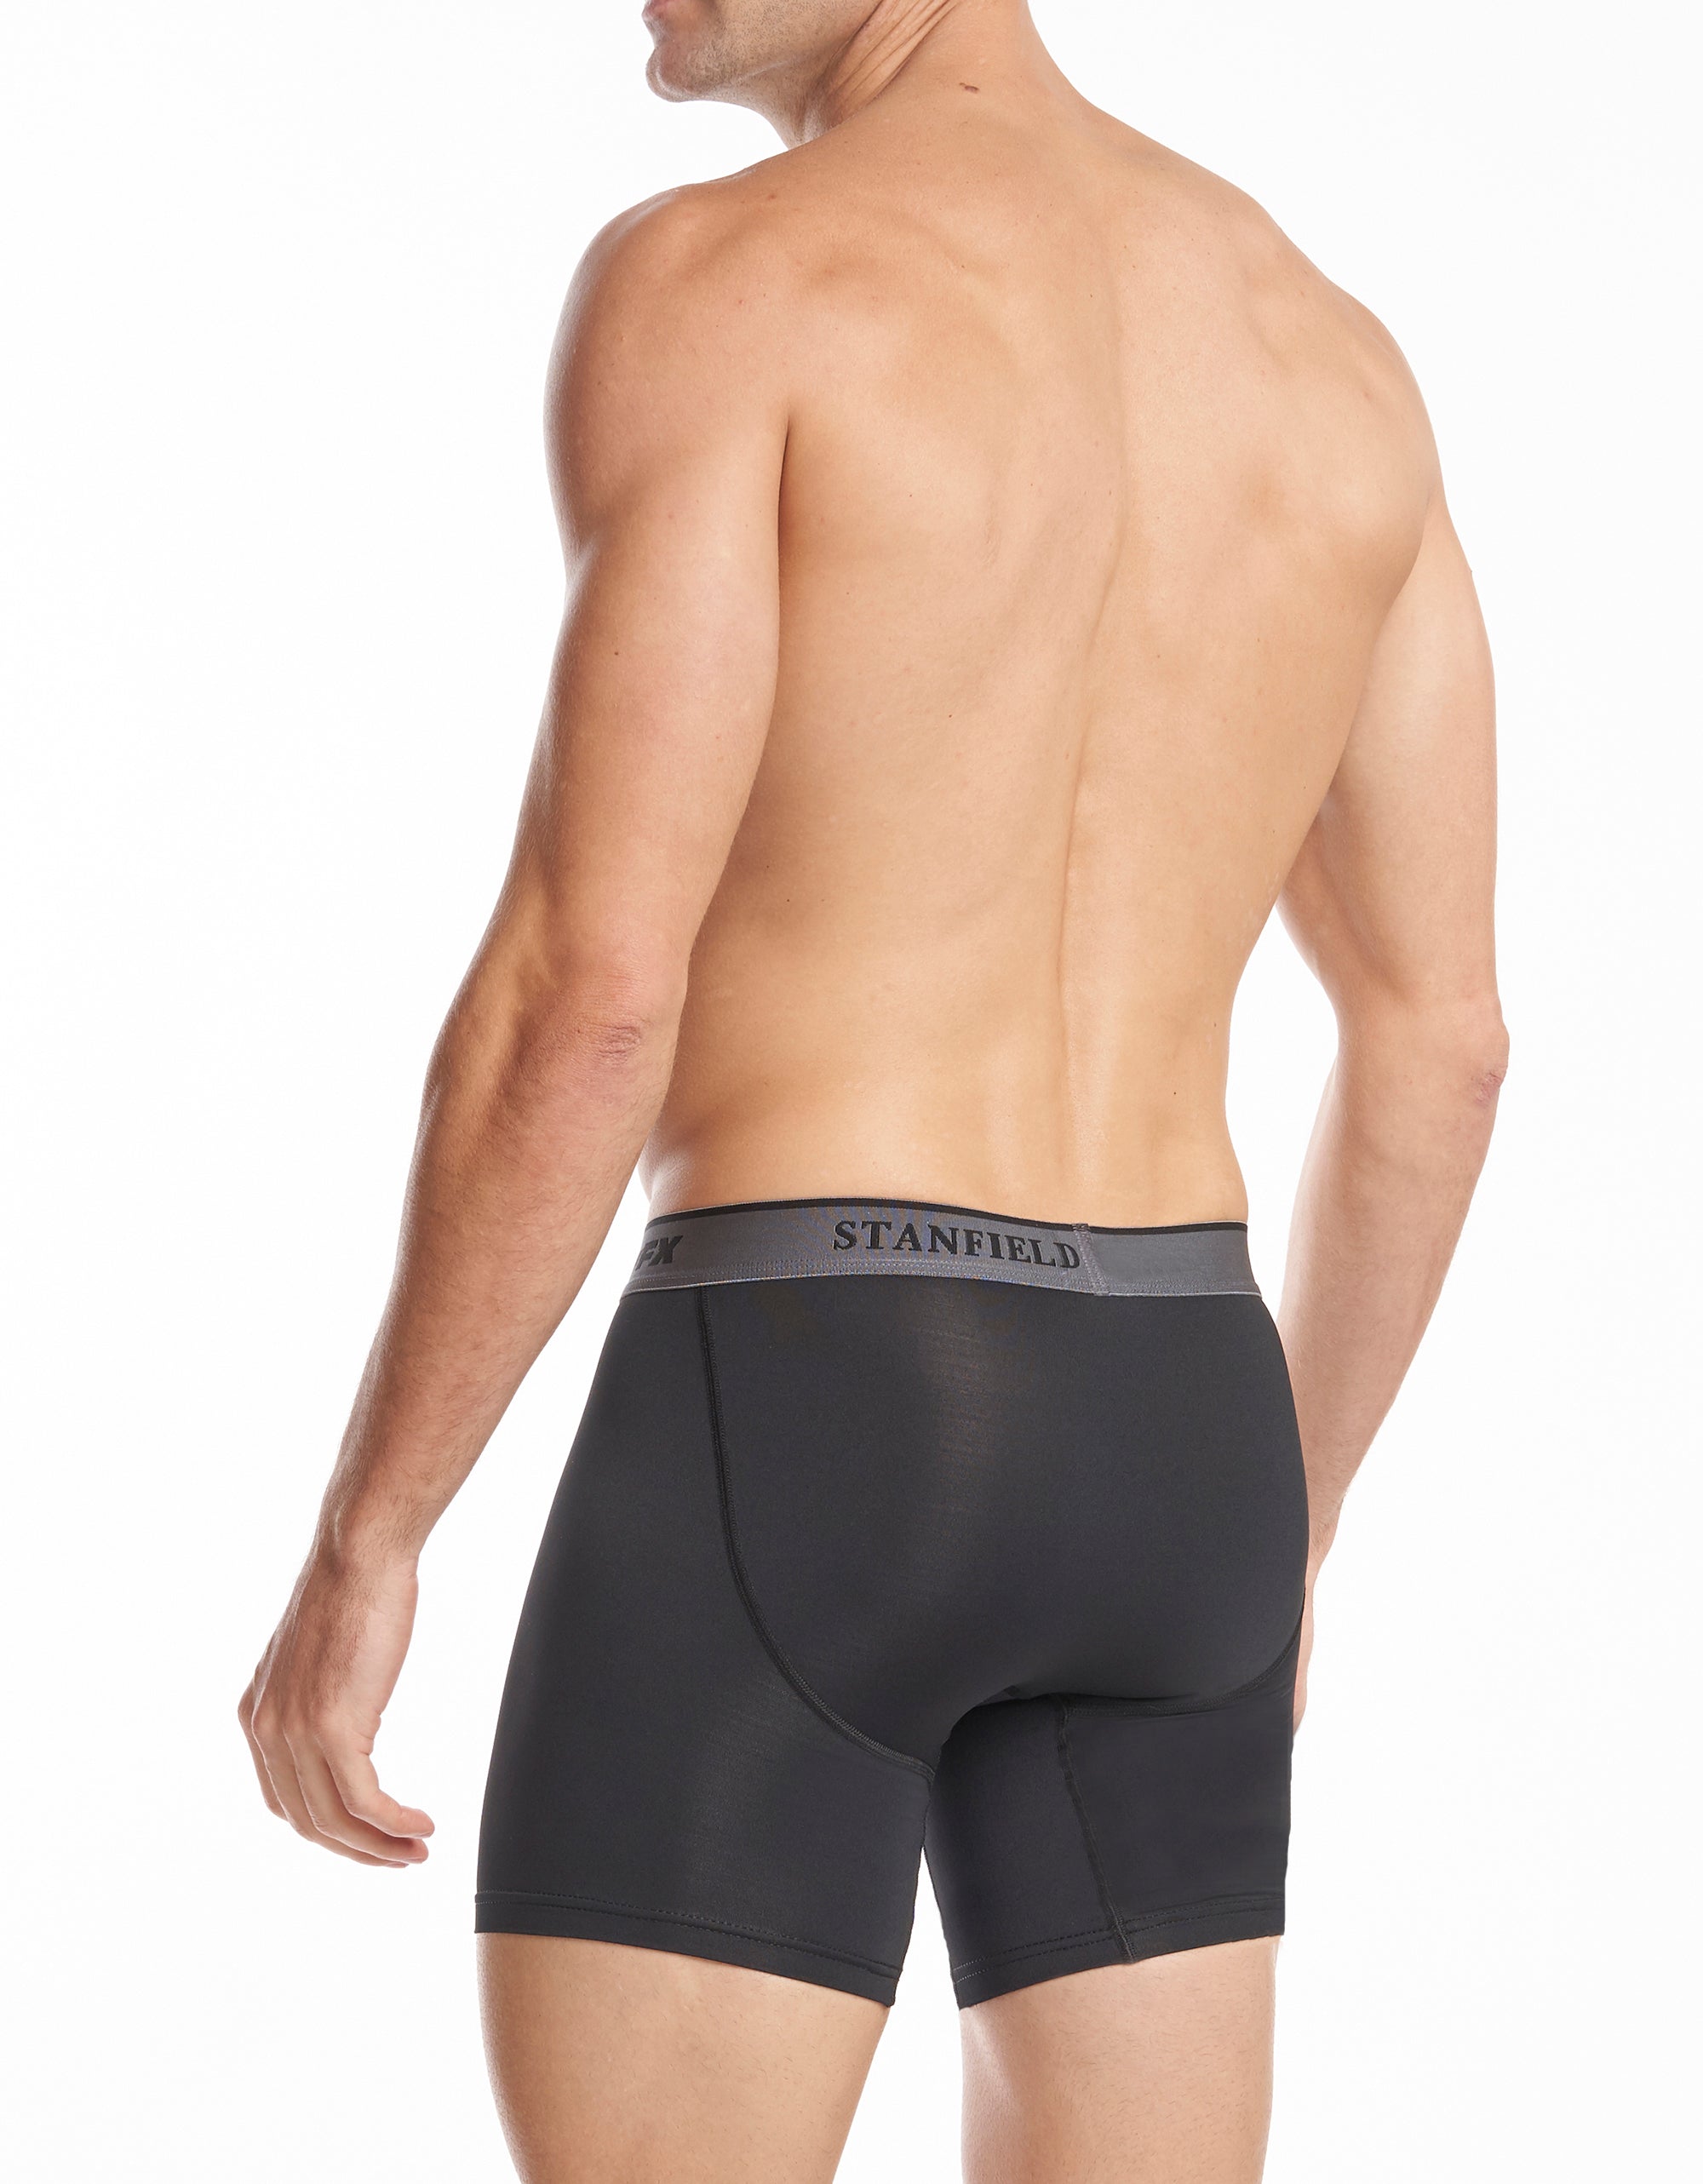 Stanfield's Men's Cotton Stretch Brief Underwear (3 Pack), Black